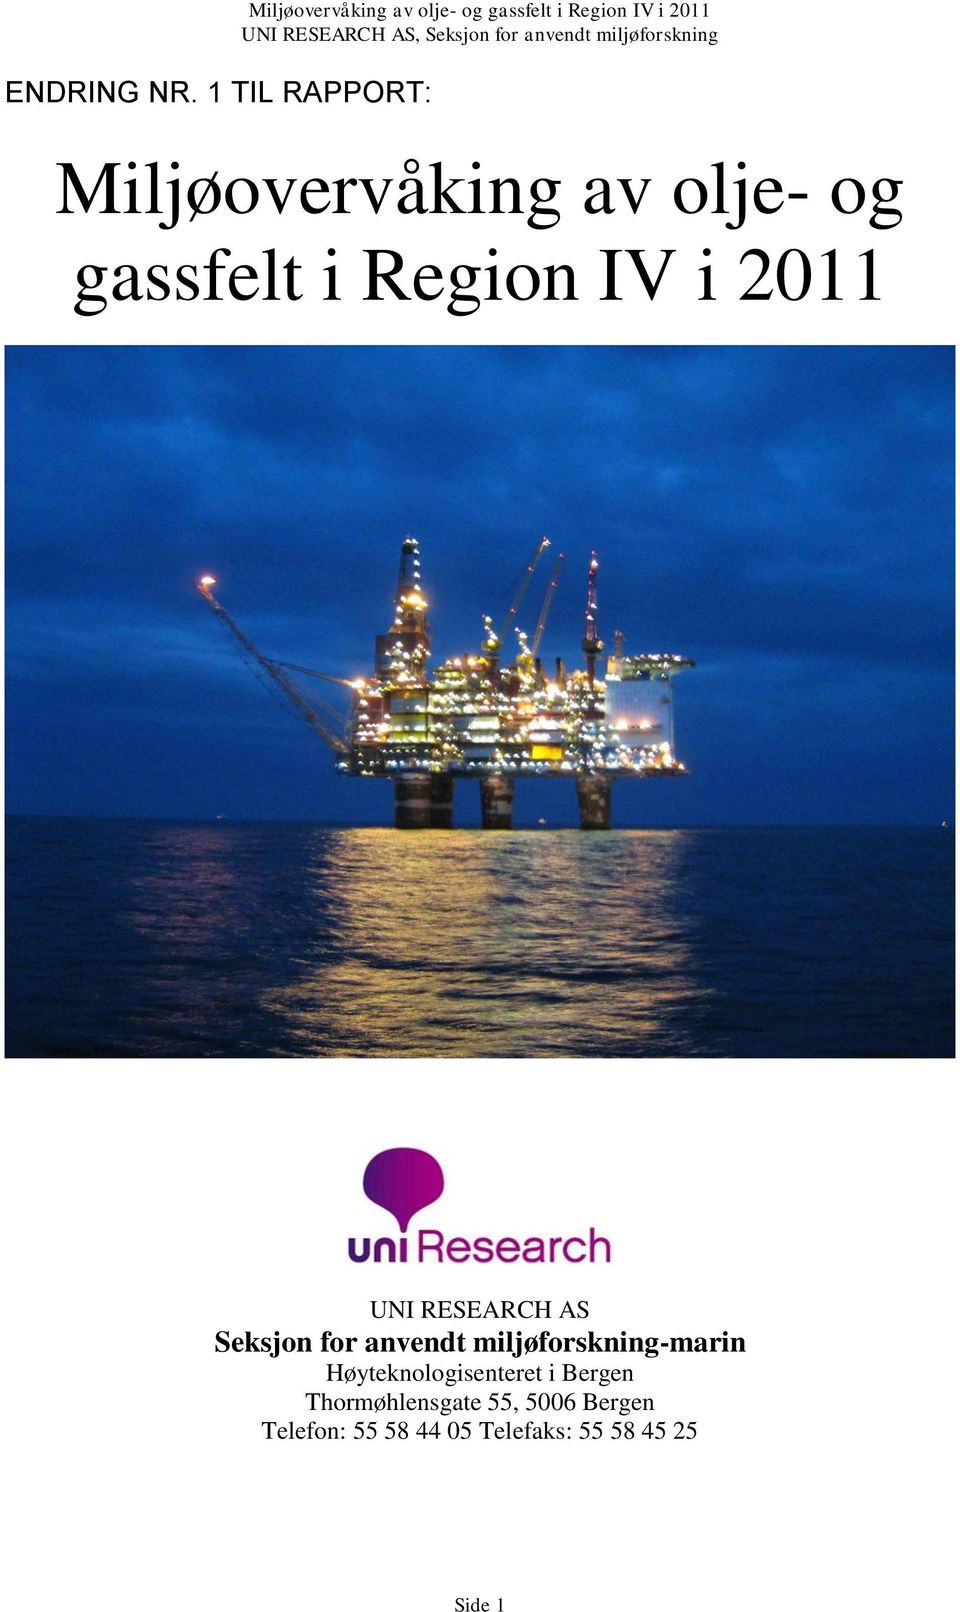 Miljøovervåking av olje- og gassfelt i Region IV i 2011 UNI RESEARCH AS